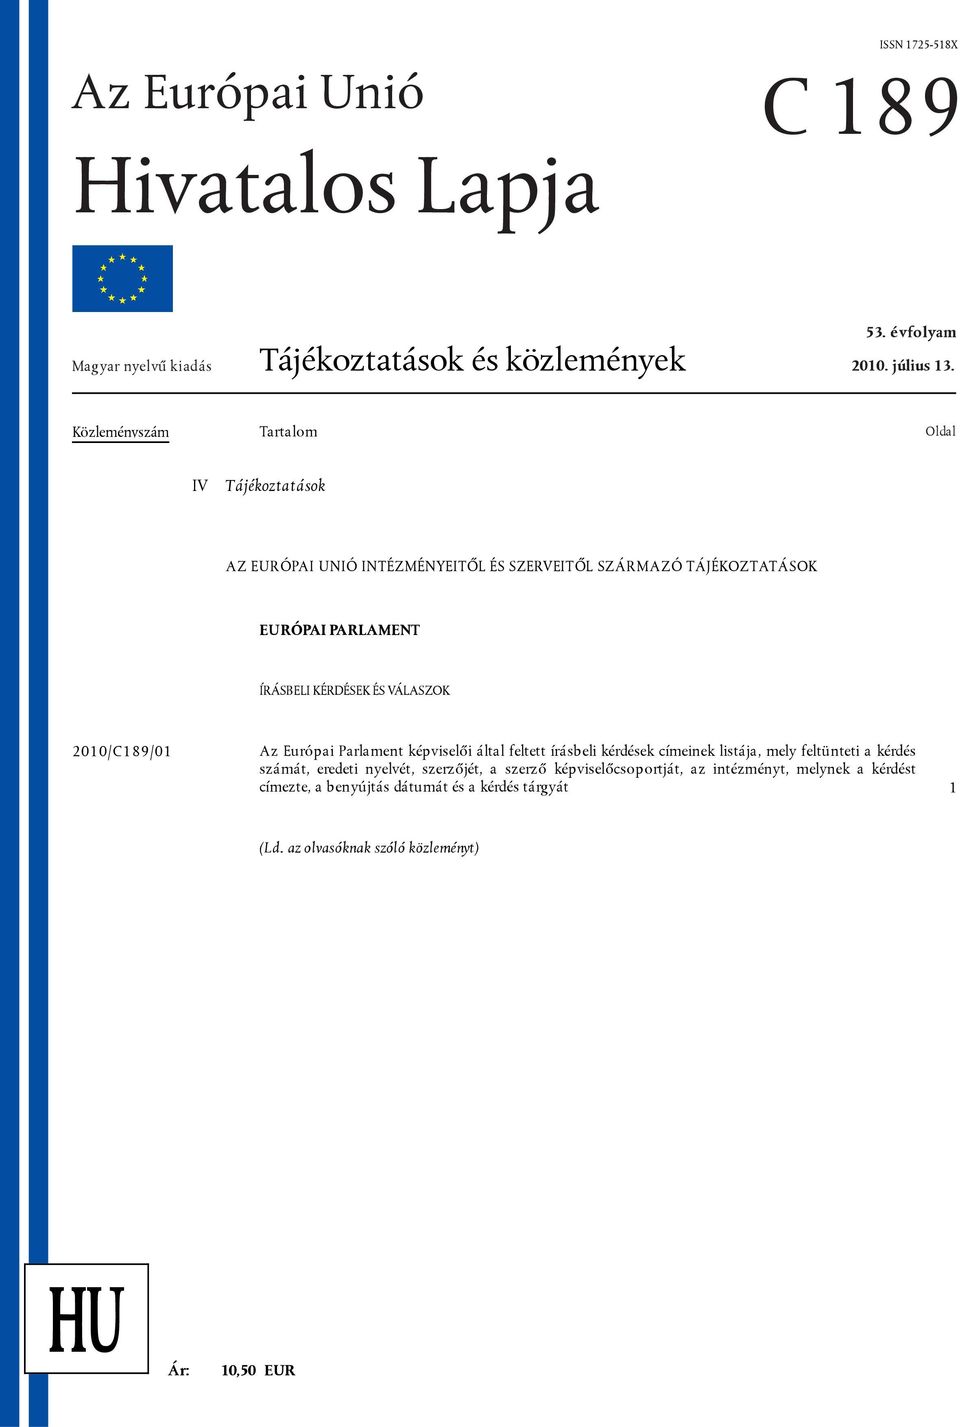 VÁLASZOK 2010/C189/01 Az Európai Parlament képviselői által feltett írásbeli kérdések címeinek listája, mely feltünteti a kérdés számát, eredeti nyelvét,